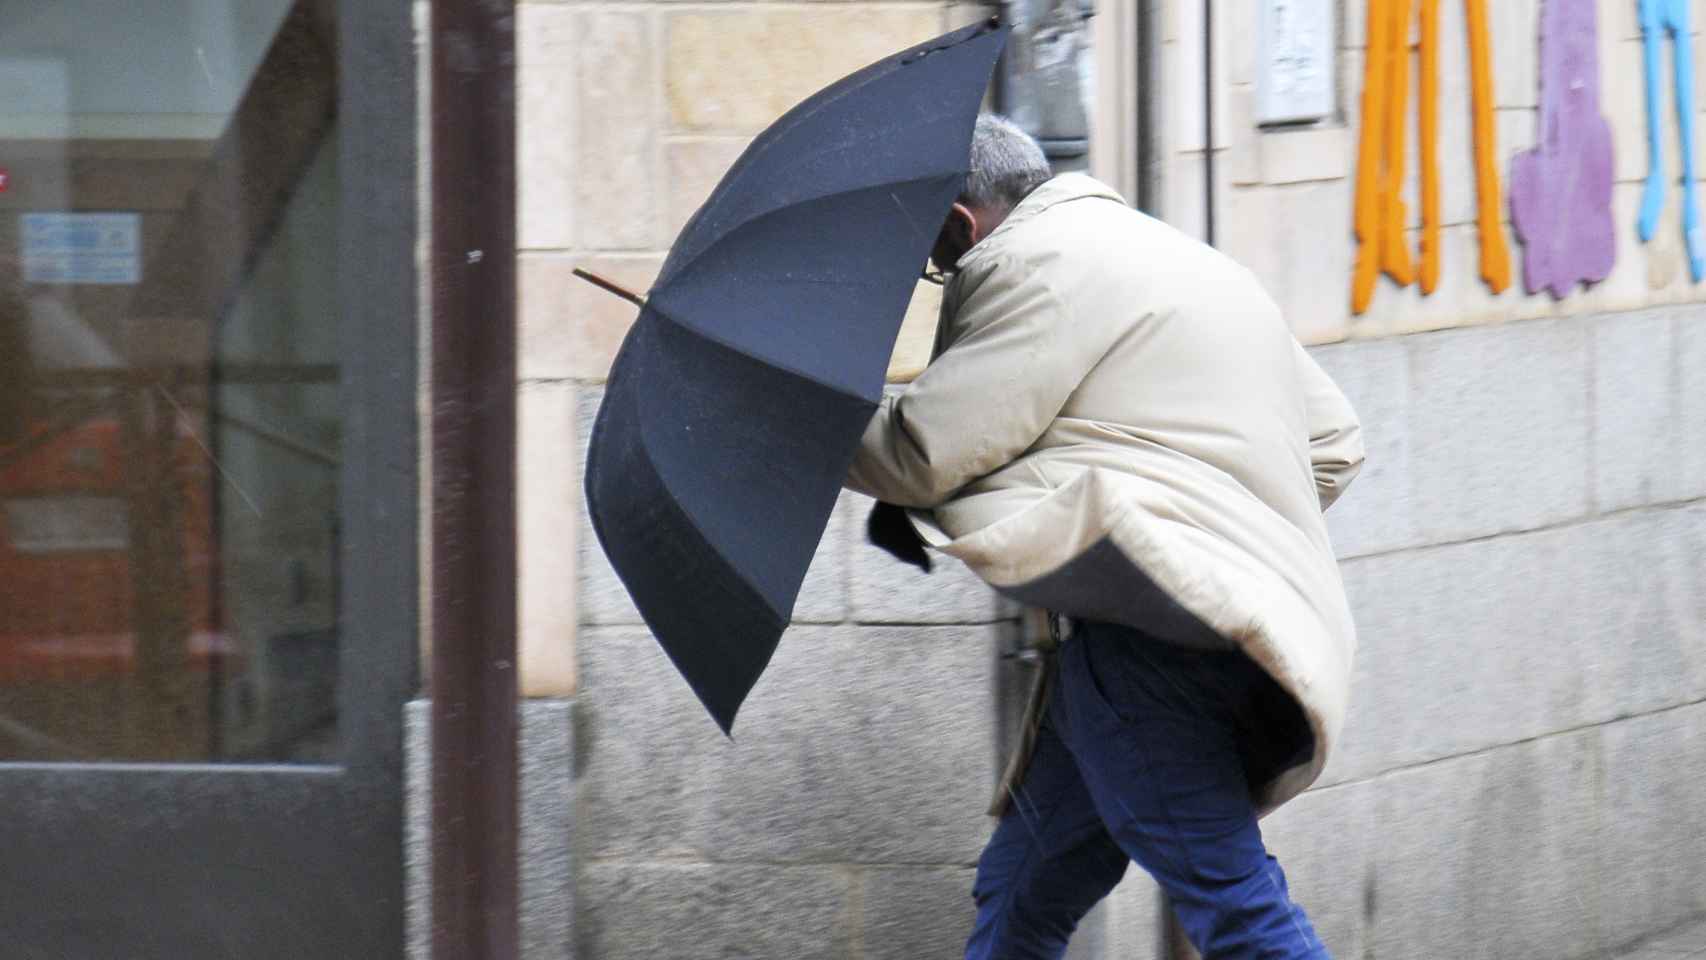 Un hombre se guarece del viento con su paraguas - ICAL